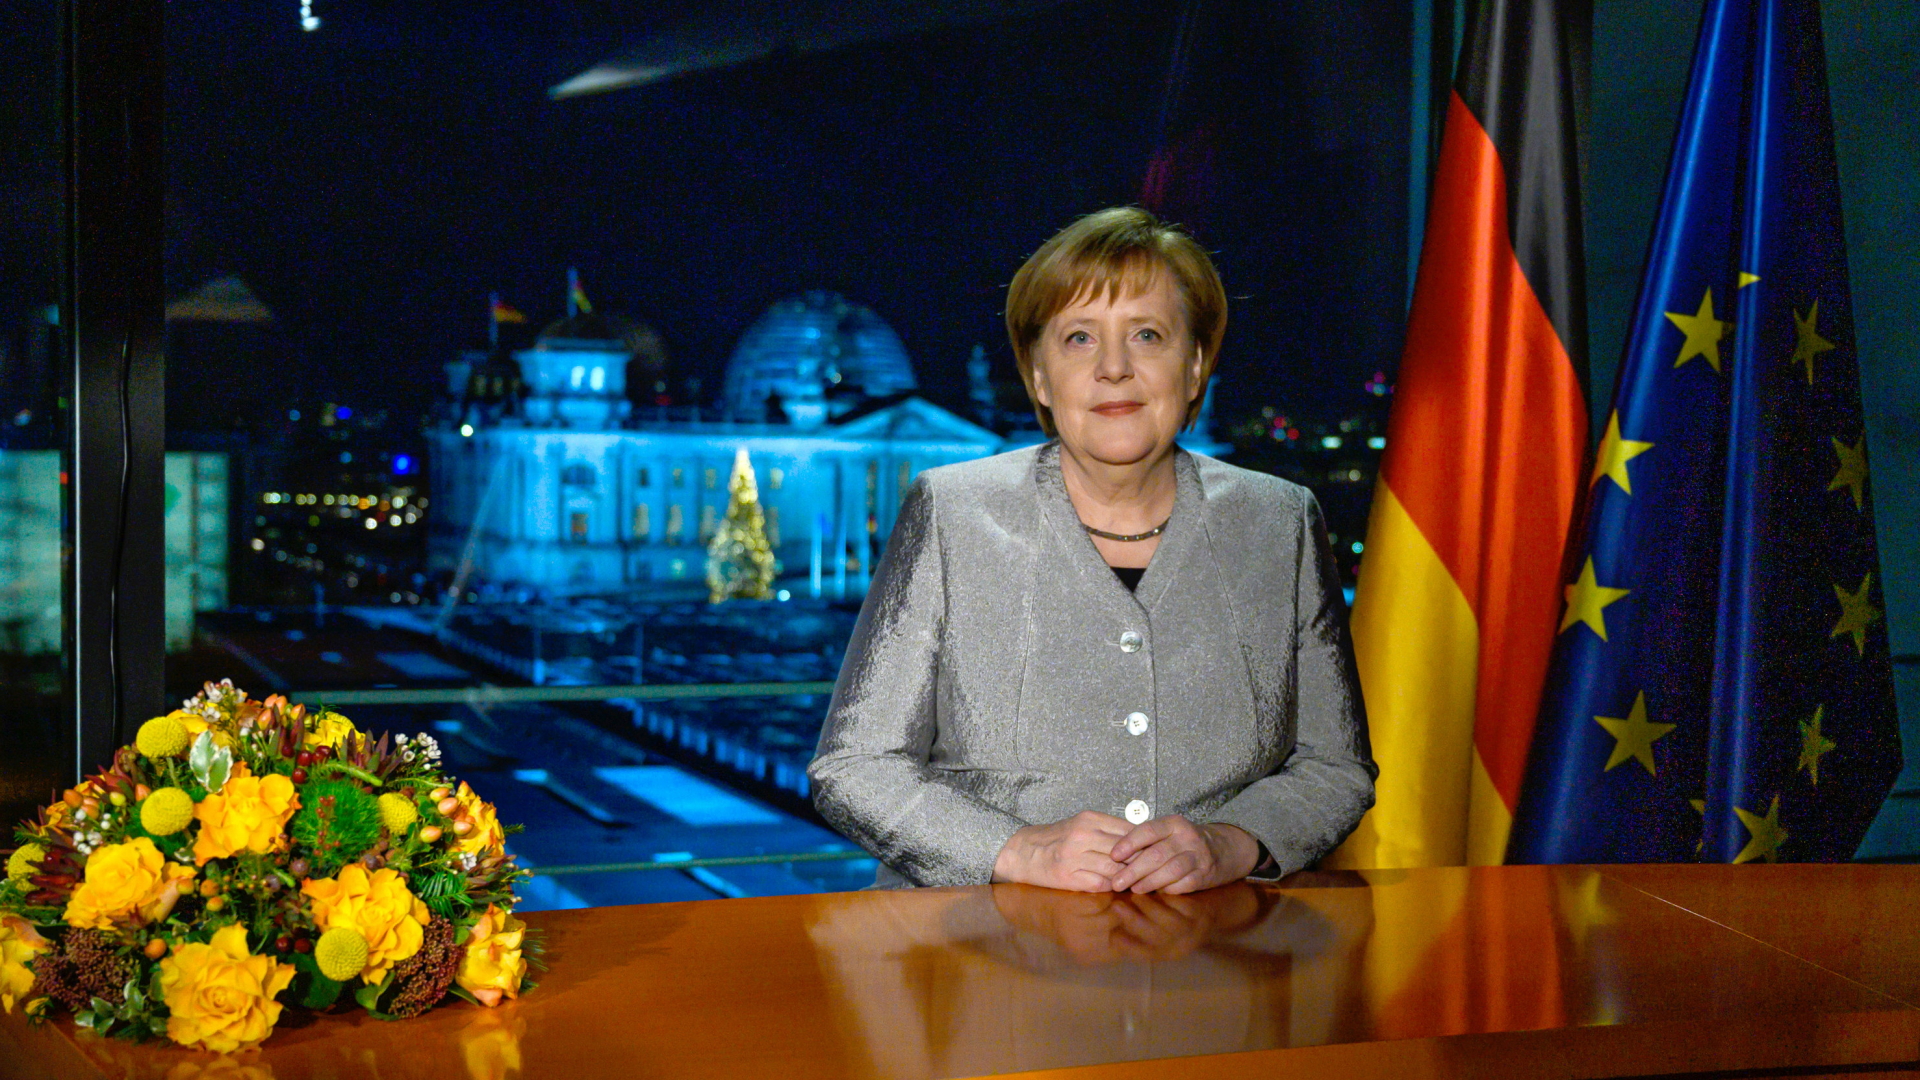 Merkel zu Neujahr: “Stärker für Überzeugungen eintreten”